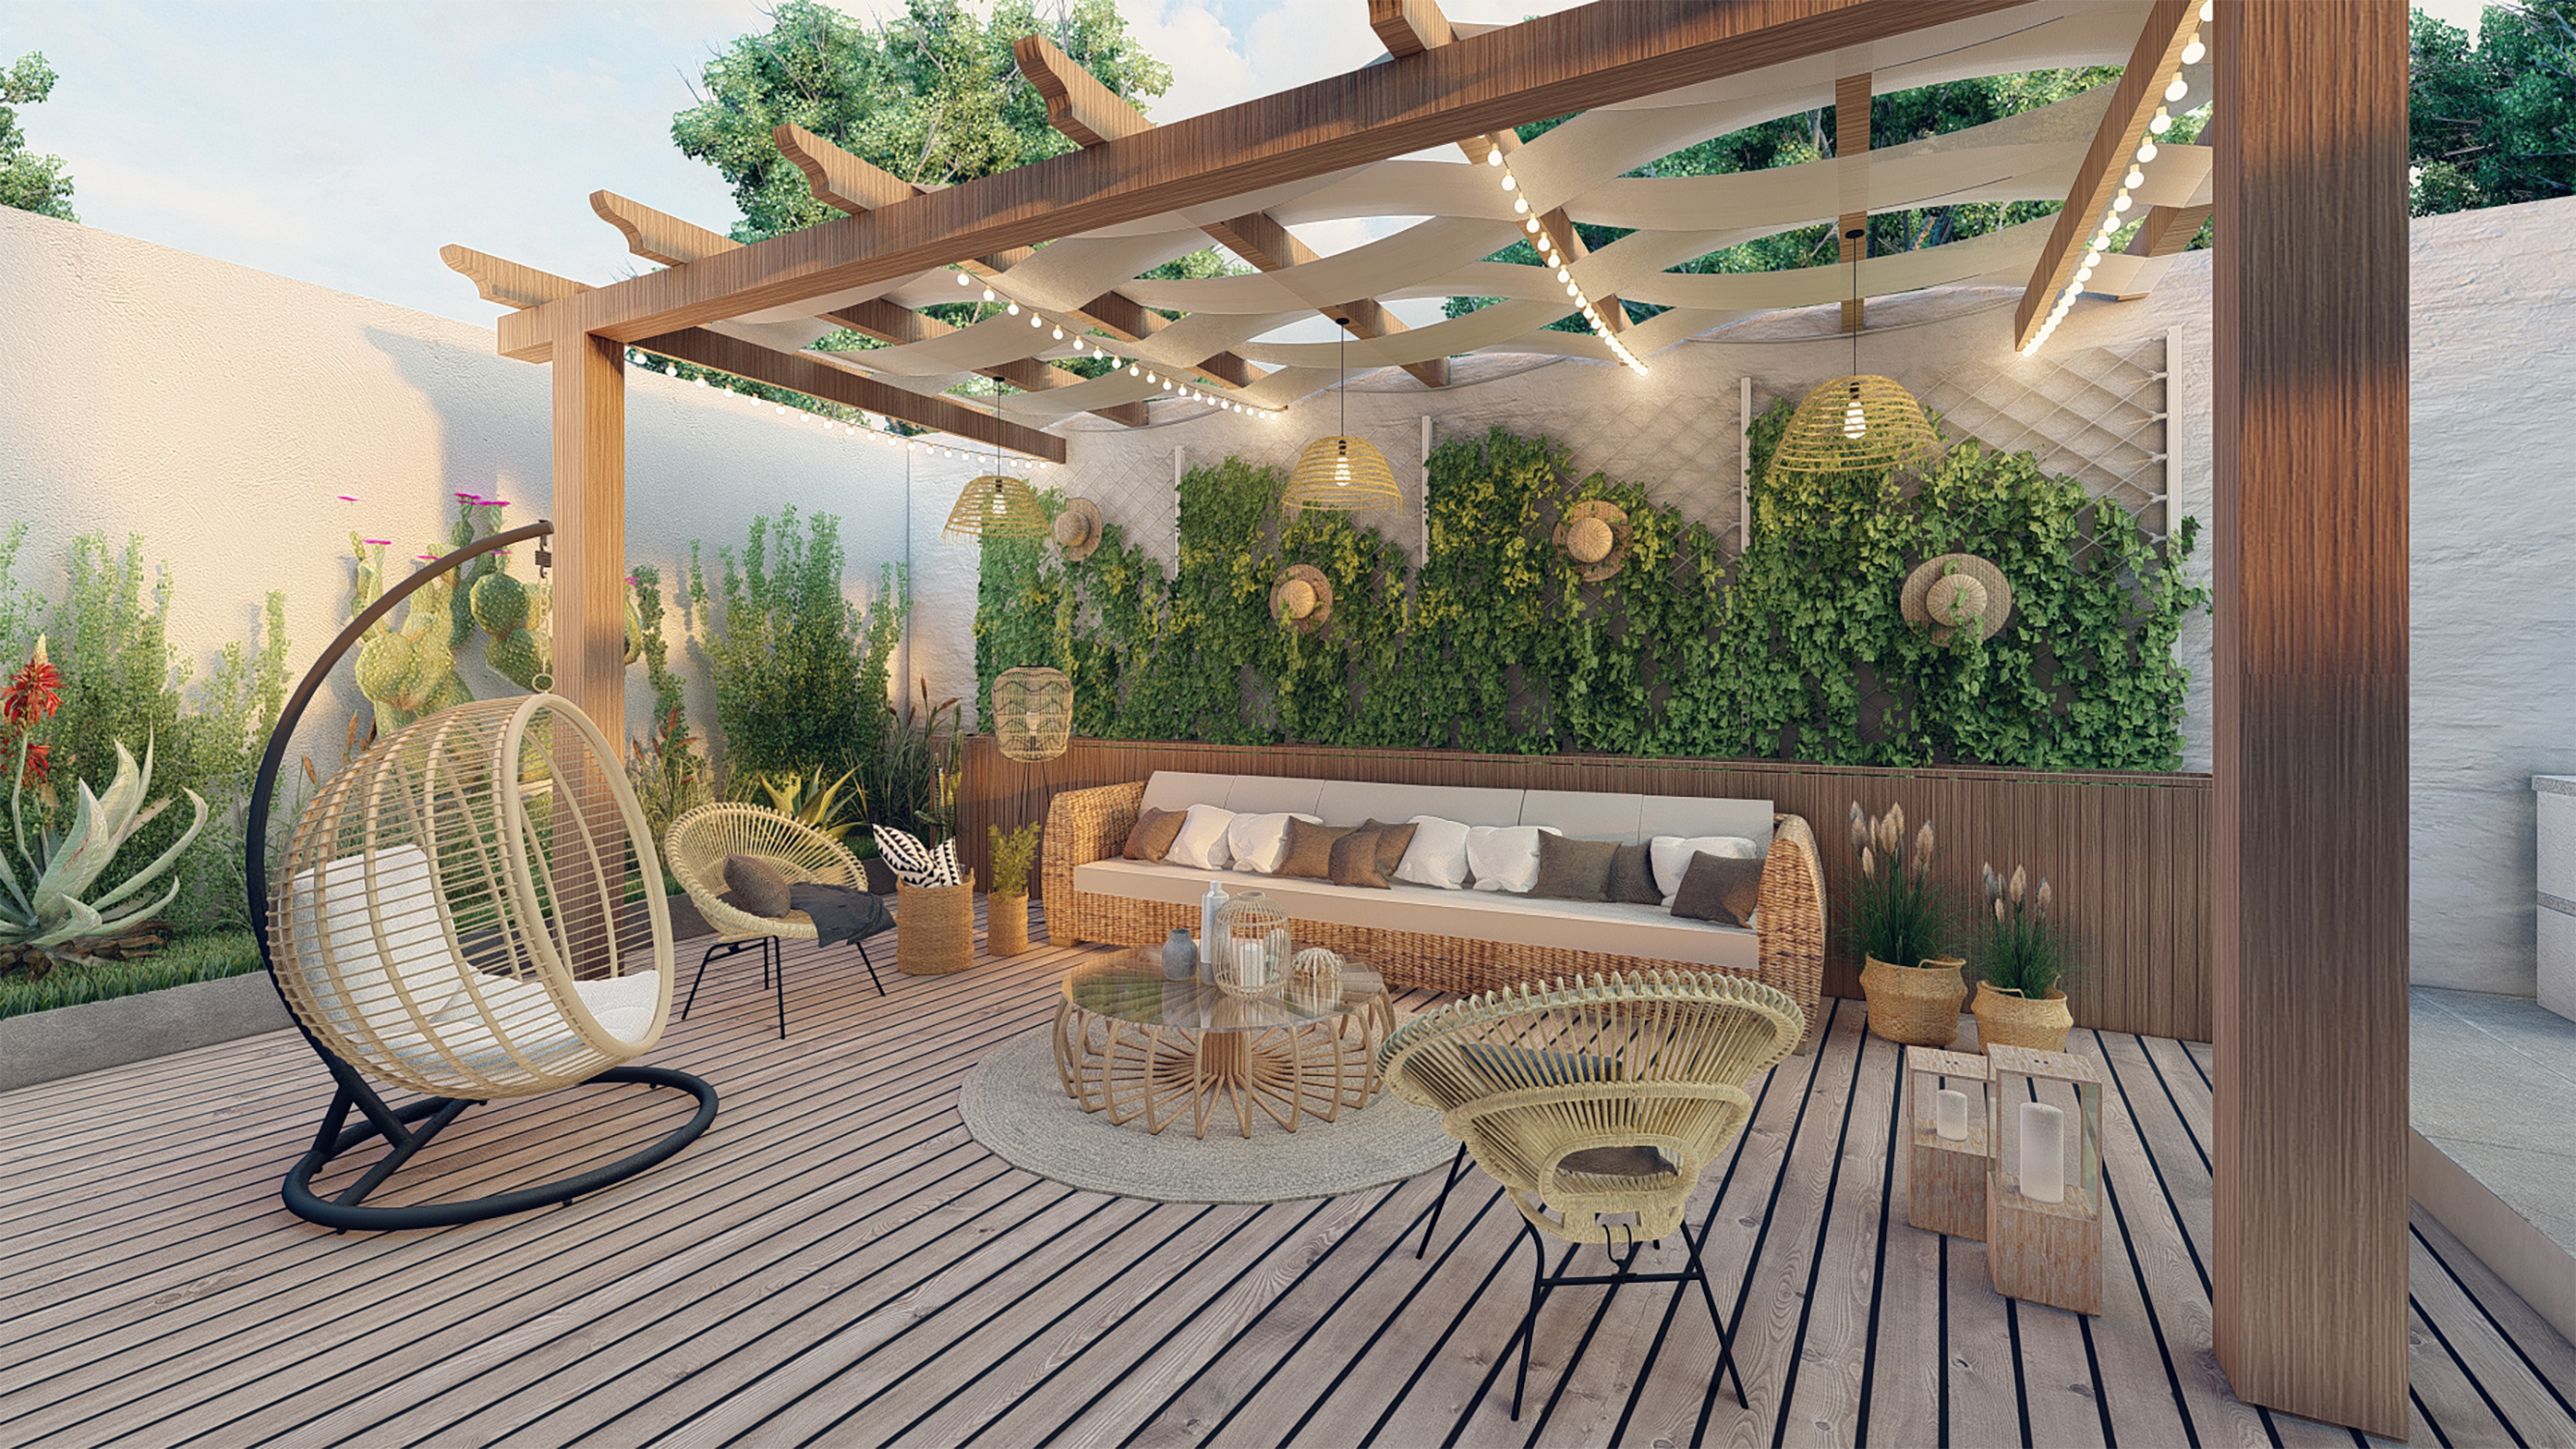 Une terrasse bien décorée est une pièce où il fait bon vivre. © Haifa, Adobe Stock